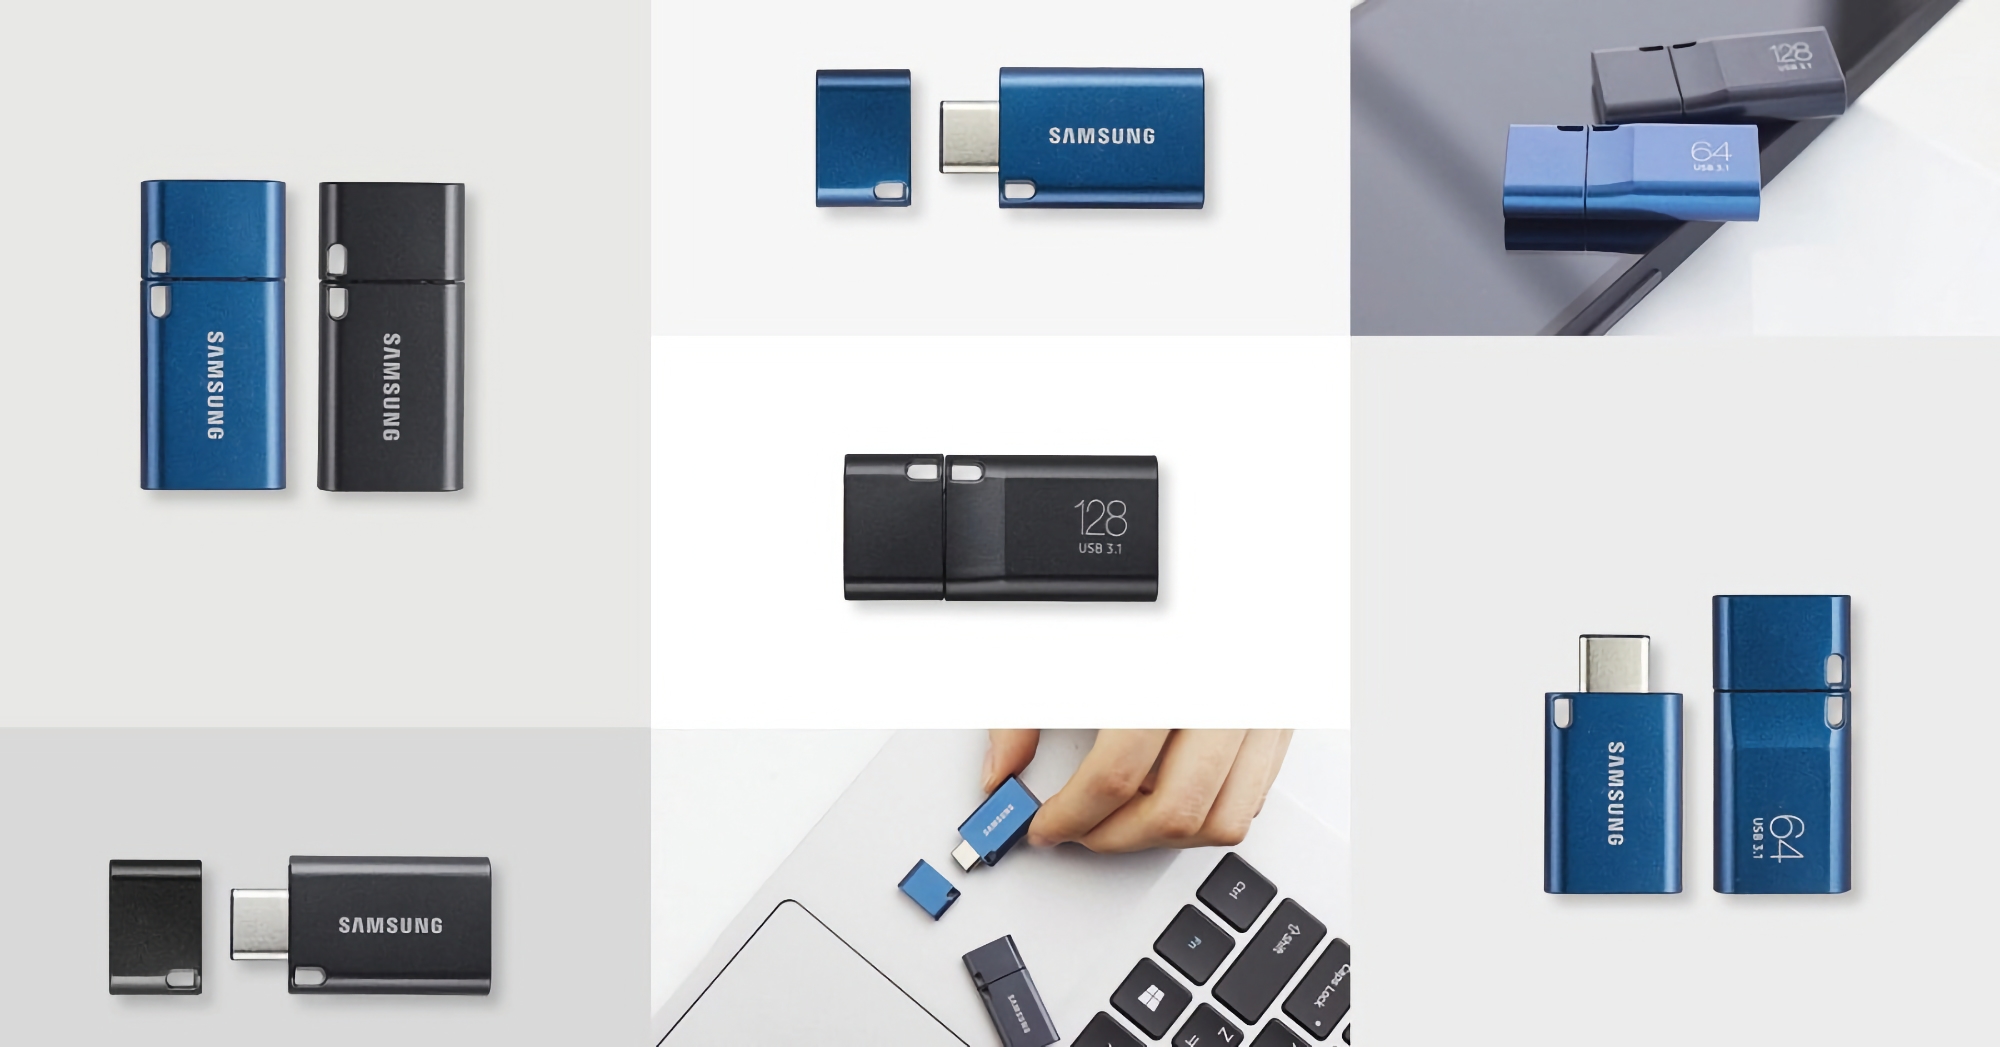 Unità flash USB Samsung Type-C con capacità di 256 GB in vendita su Amazon a 27,99 dollari (12 dollari di sconto)